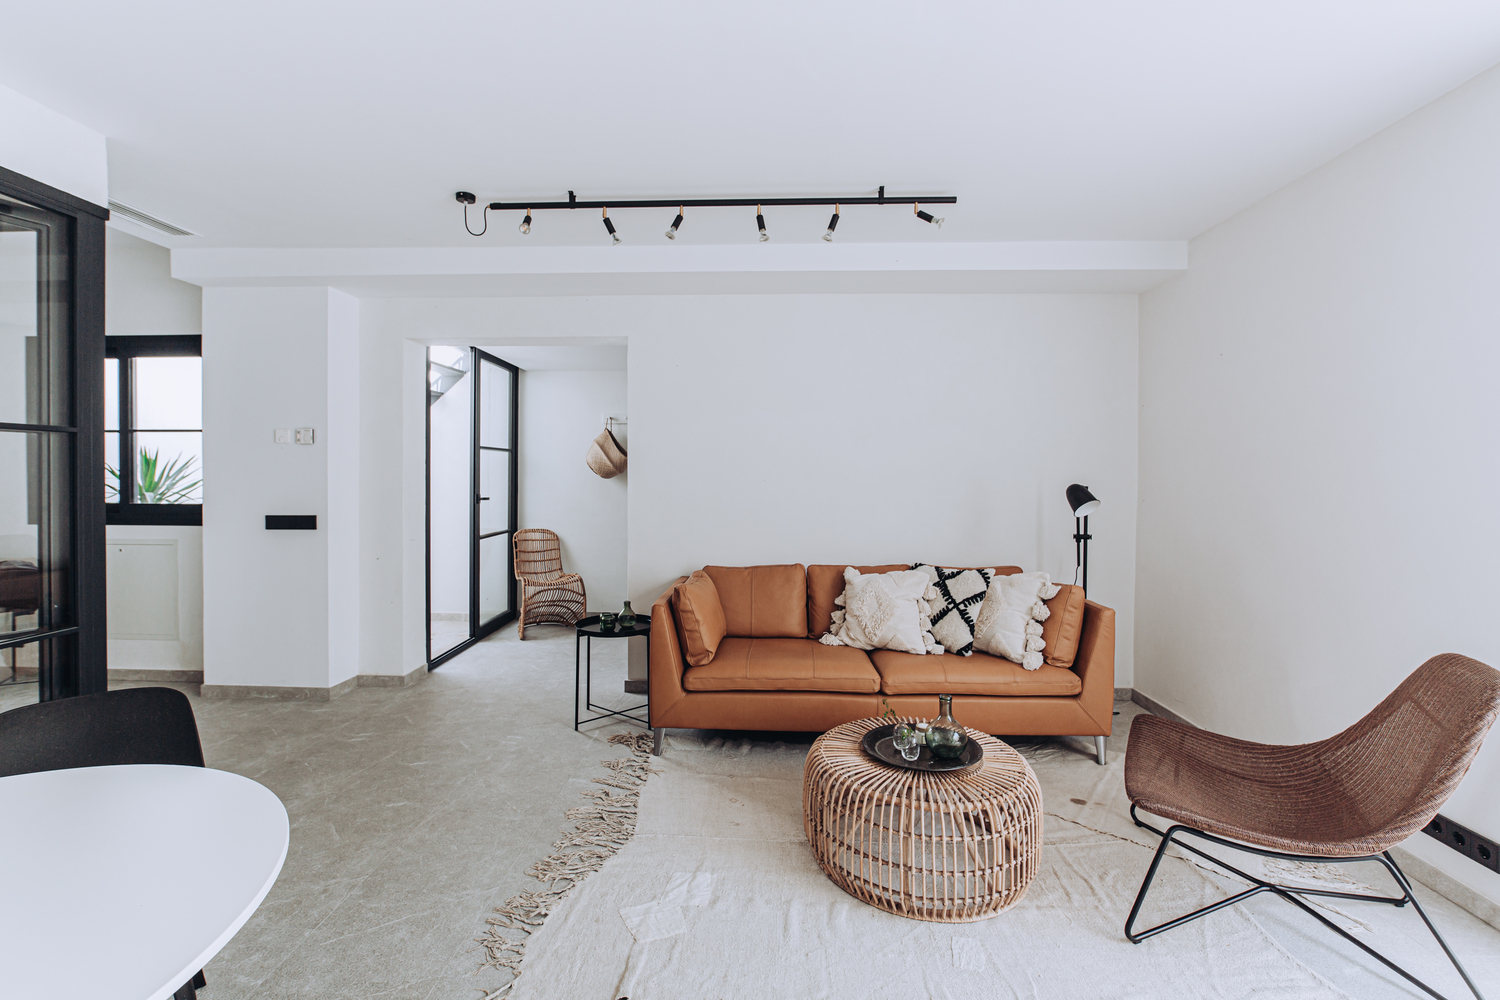 Phòng khách gần gũi với ghế sofa màu nâu cùng vài chiếc gối tựa ấm áp, tấm thảm trải sàn giản dị phân vùng phòng khách với những khu vực khác.